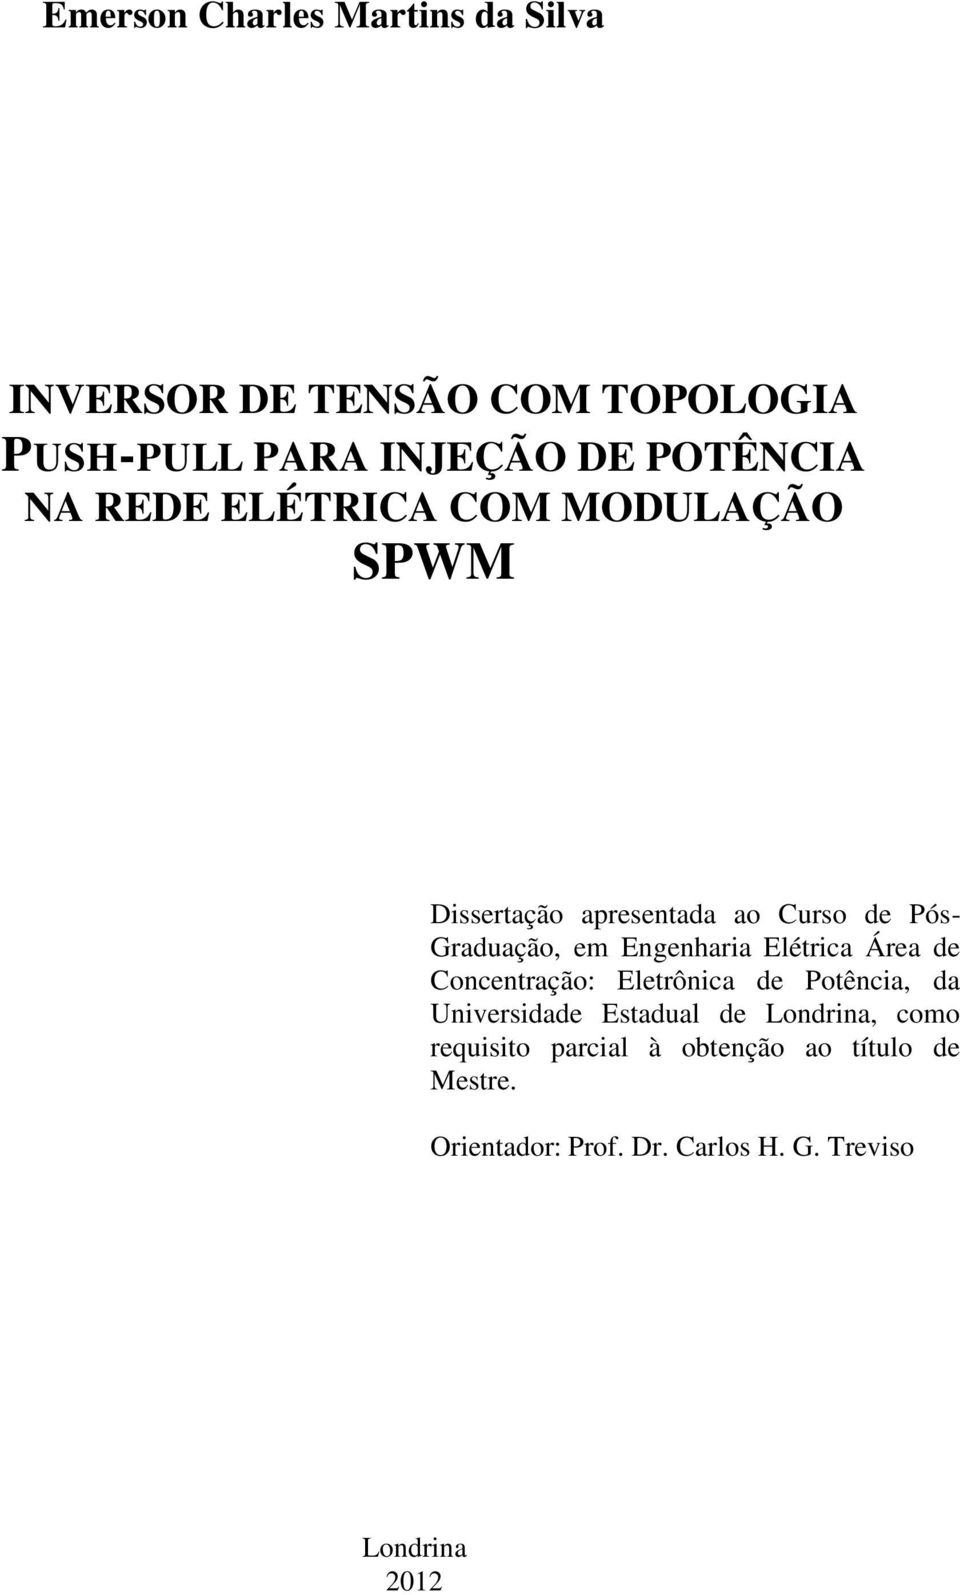 Elétrica Área de Concentração: Eletrônica de Potência, da Universidade Estadual de Londrina, como